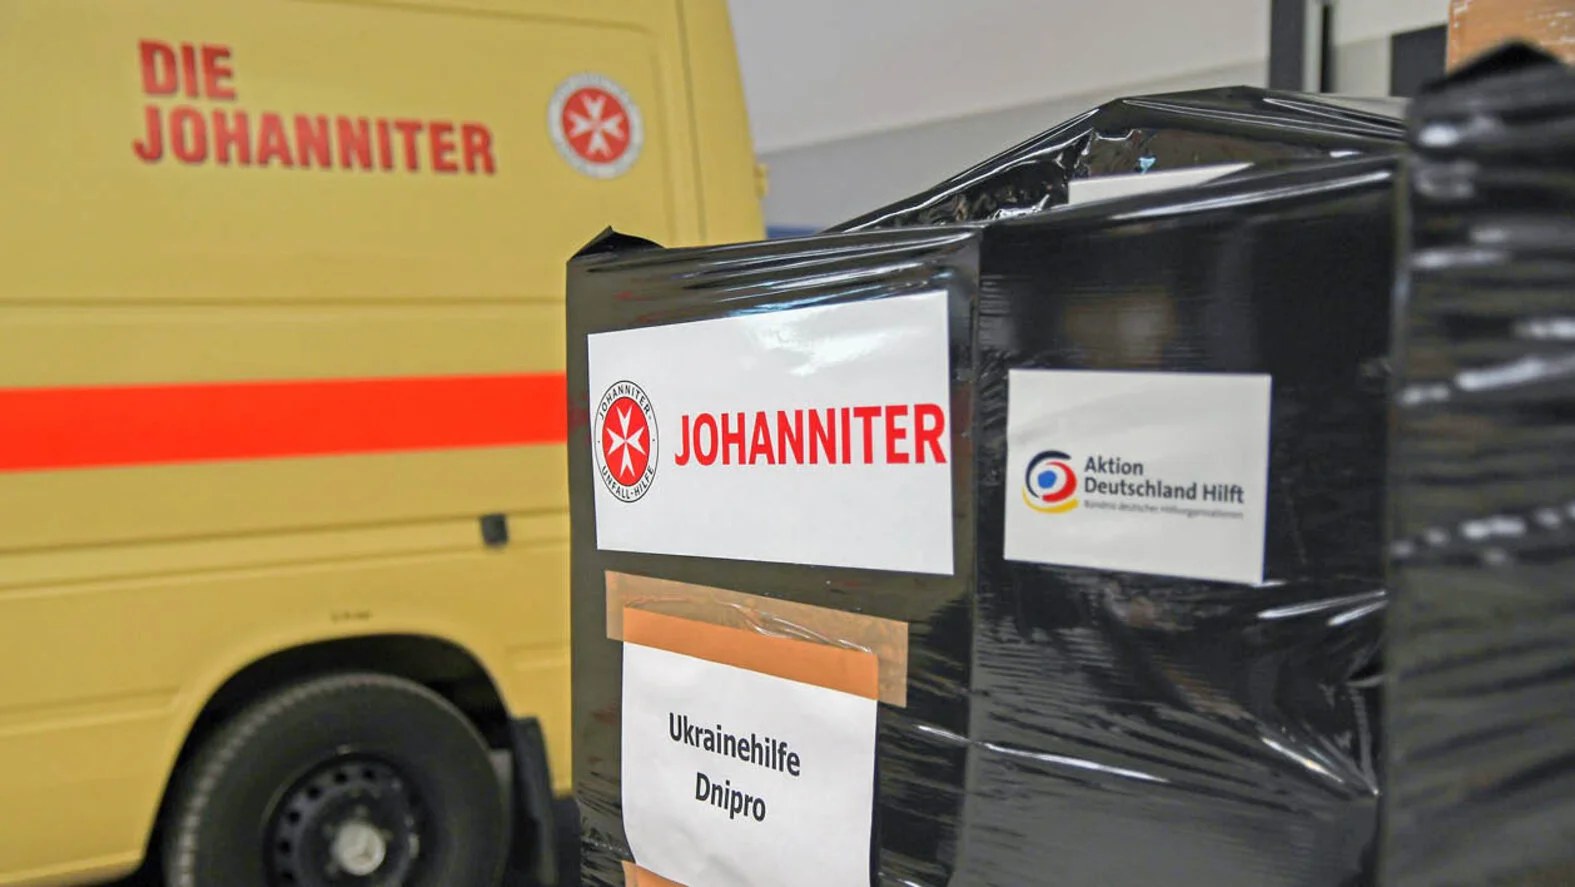 Johanniter Spenden für Ukraine